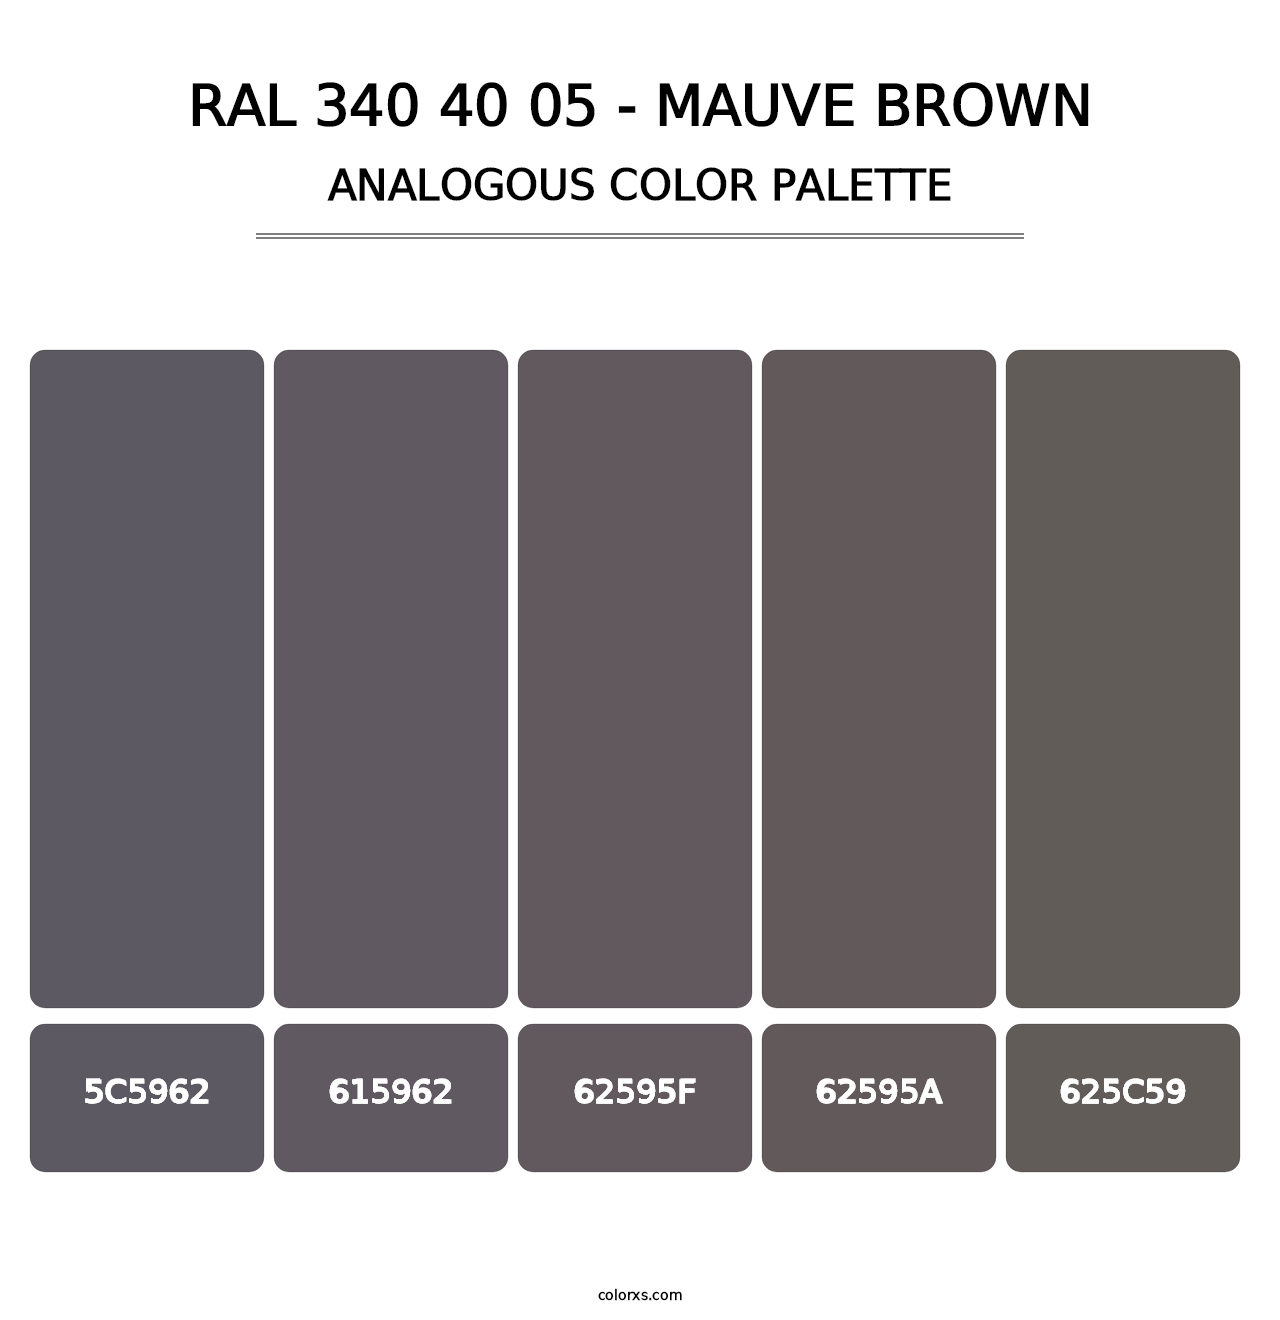 RAL 340 40 05 - Mauve Brown - Analogous Color Palette